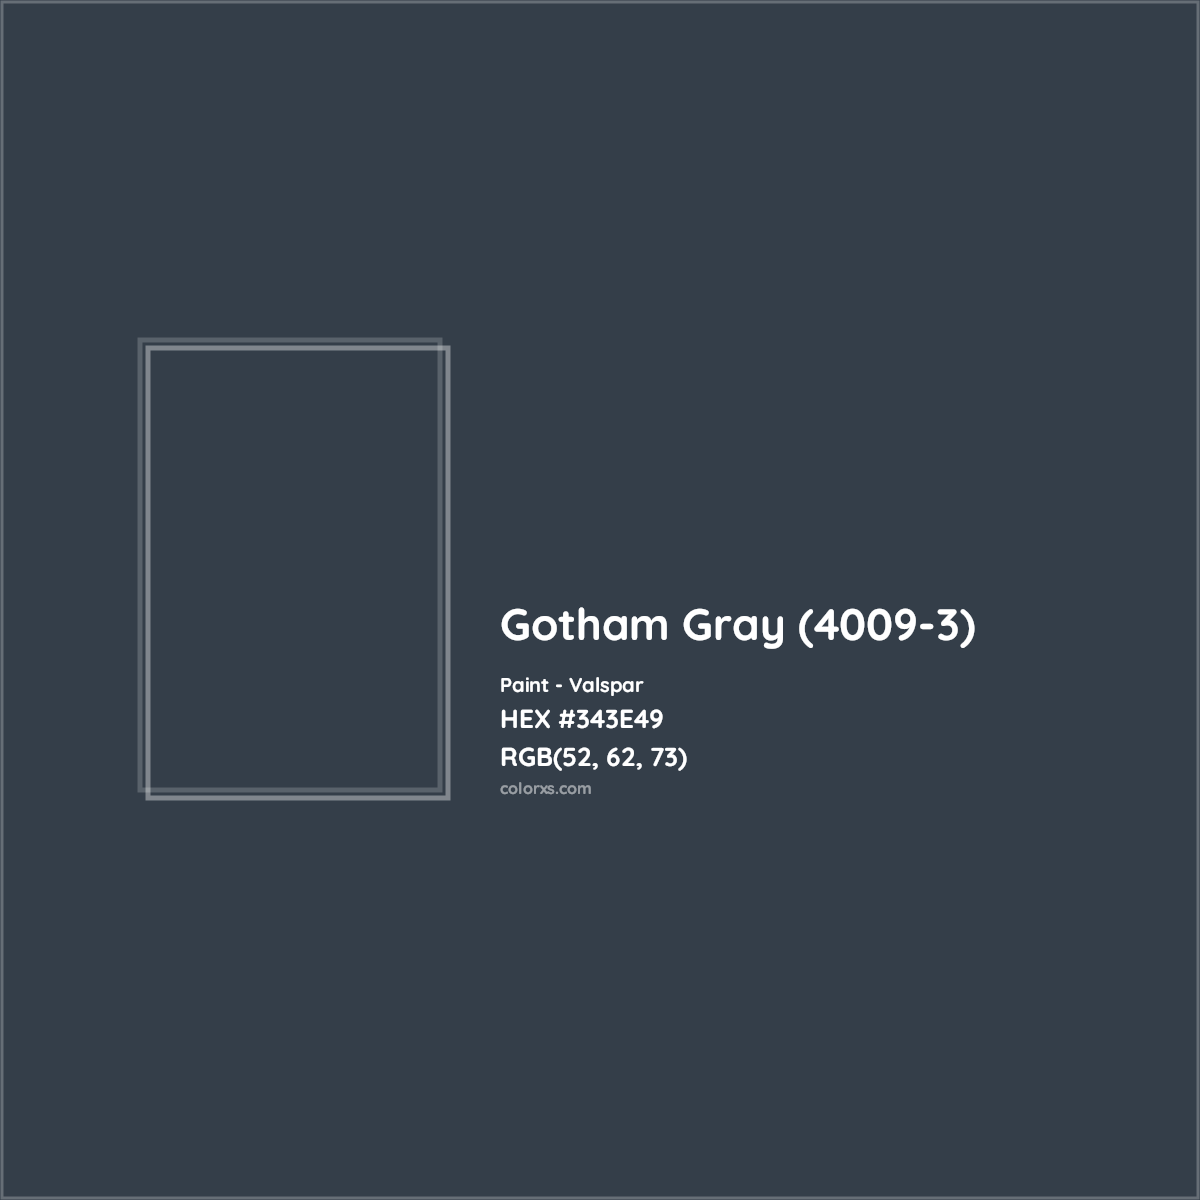 HEX #343E49 Gotham Gray (4009-3) Paint Valspar - Color Code